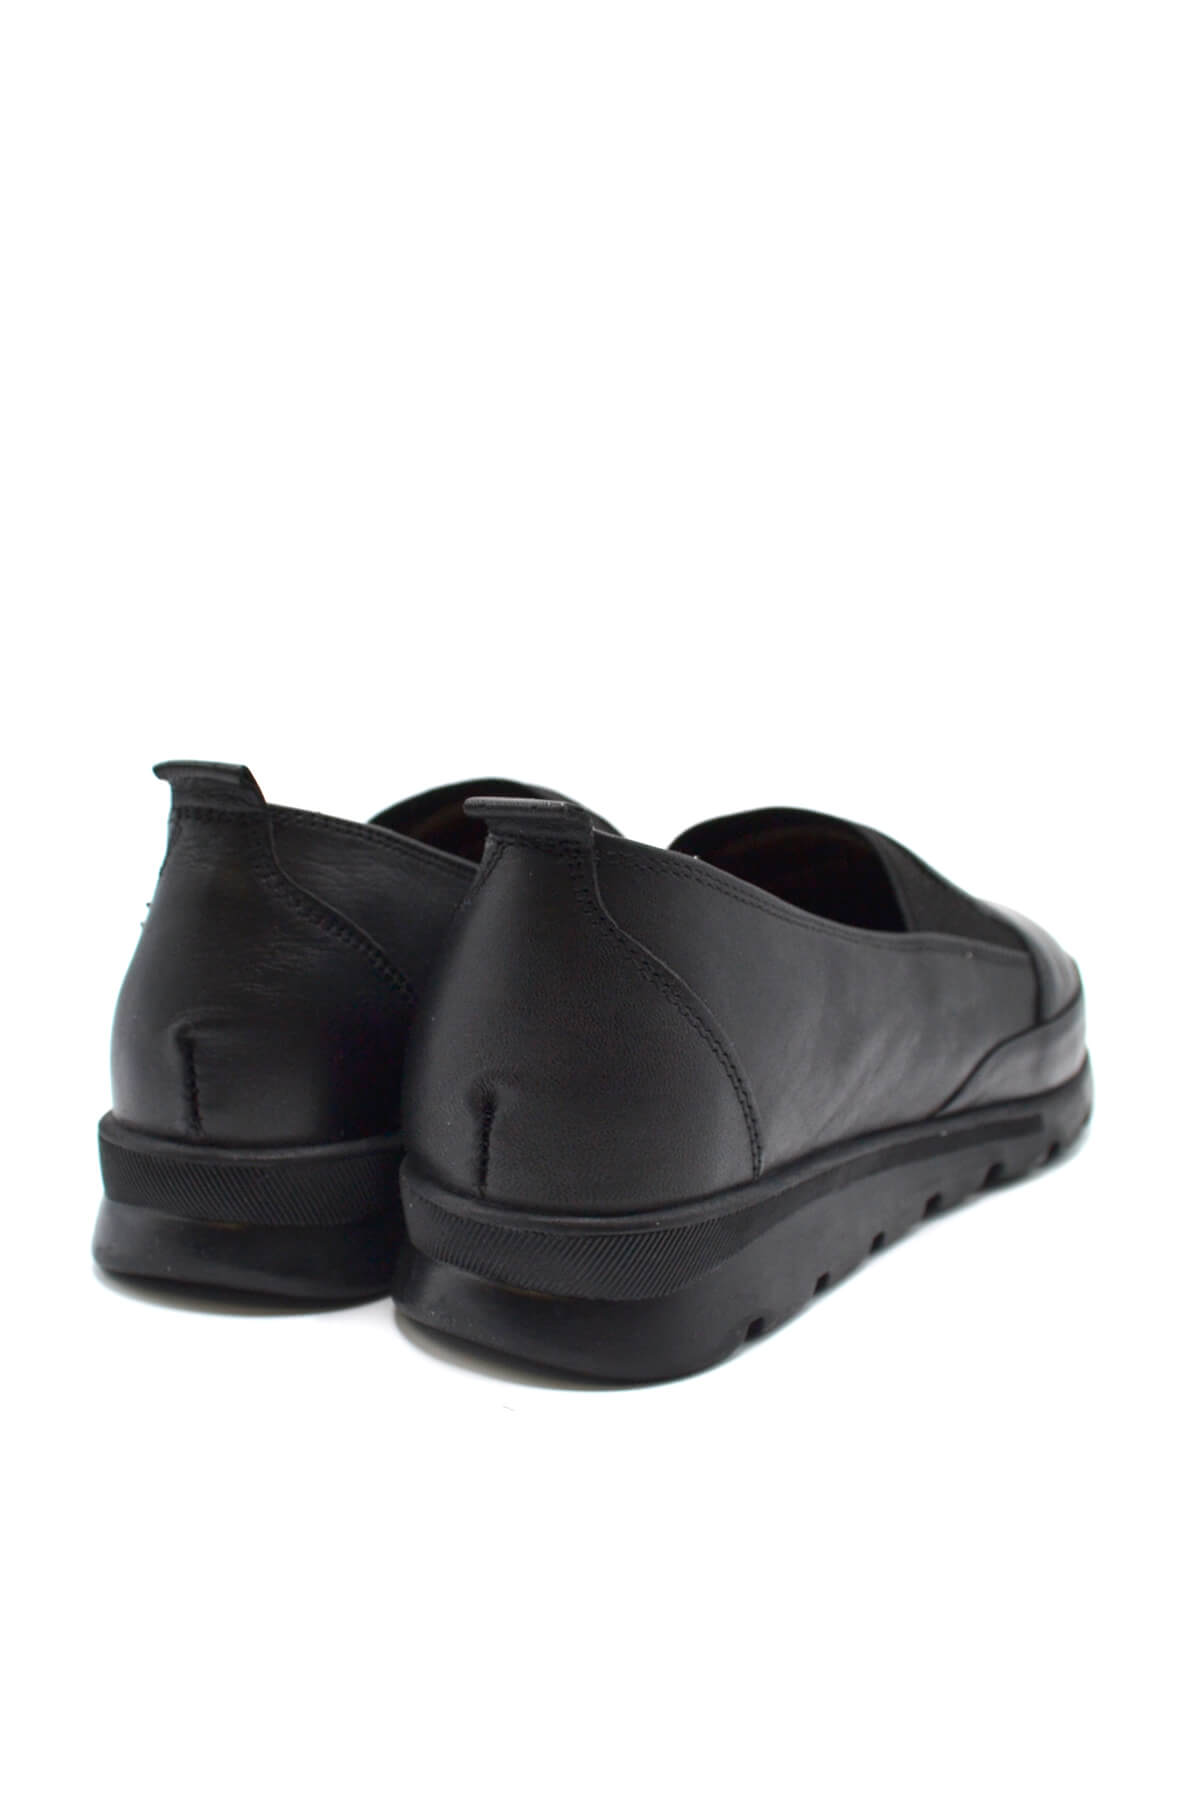 Kadın Comfort Deri Ayakkabı Siyah 2224709K